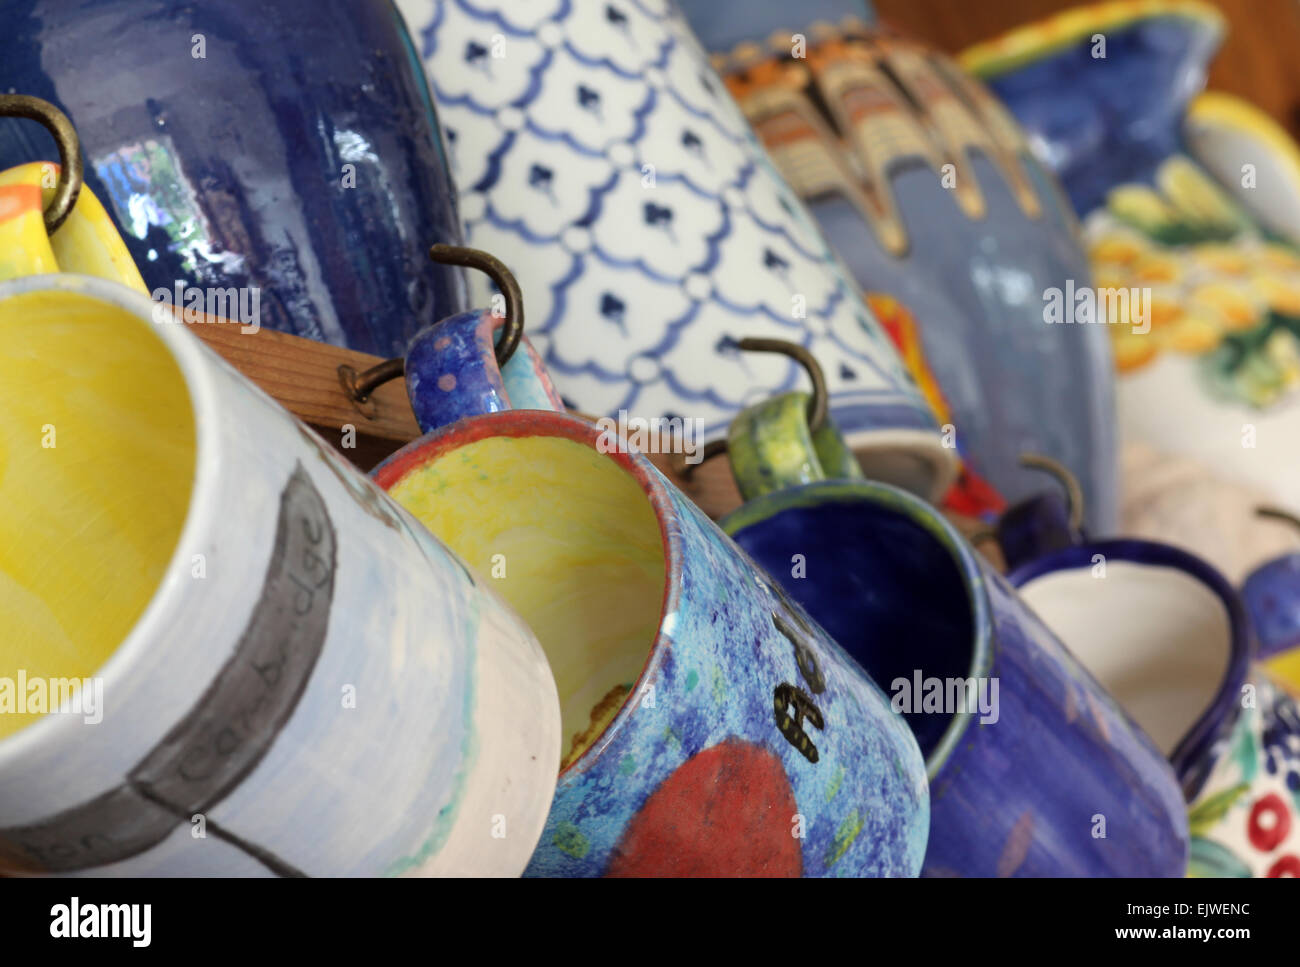 Image abstraite de jolis mugs et pichets Banque D'Images